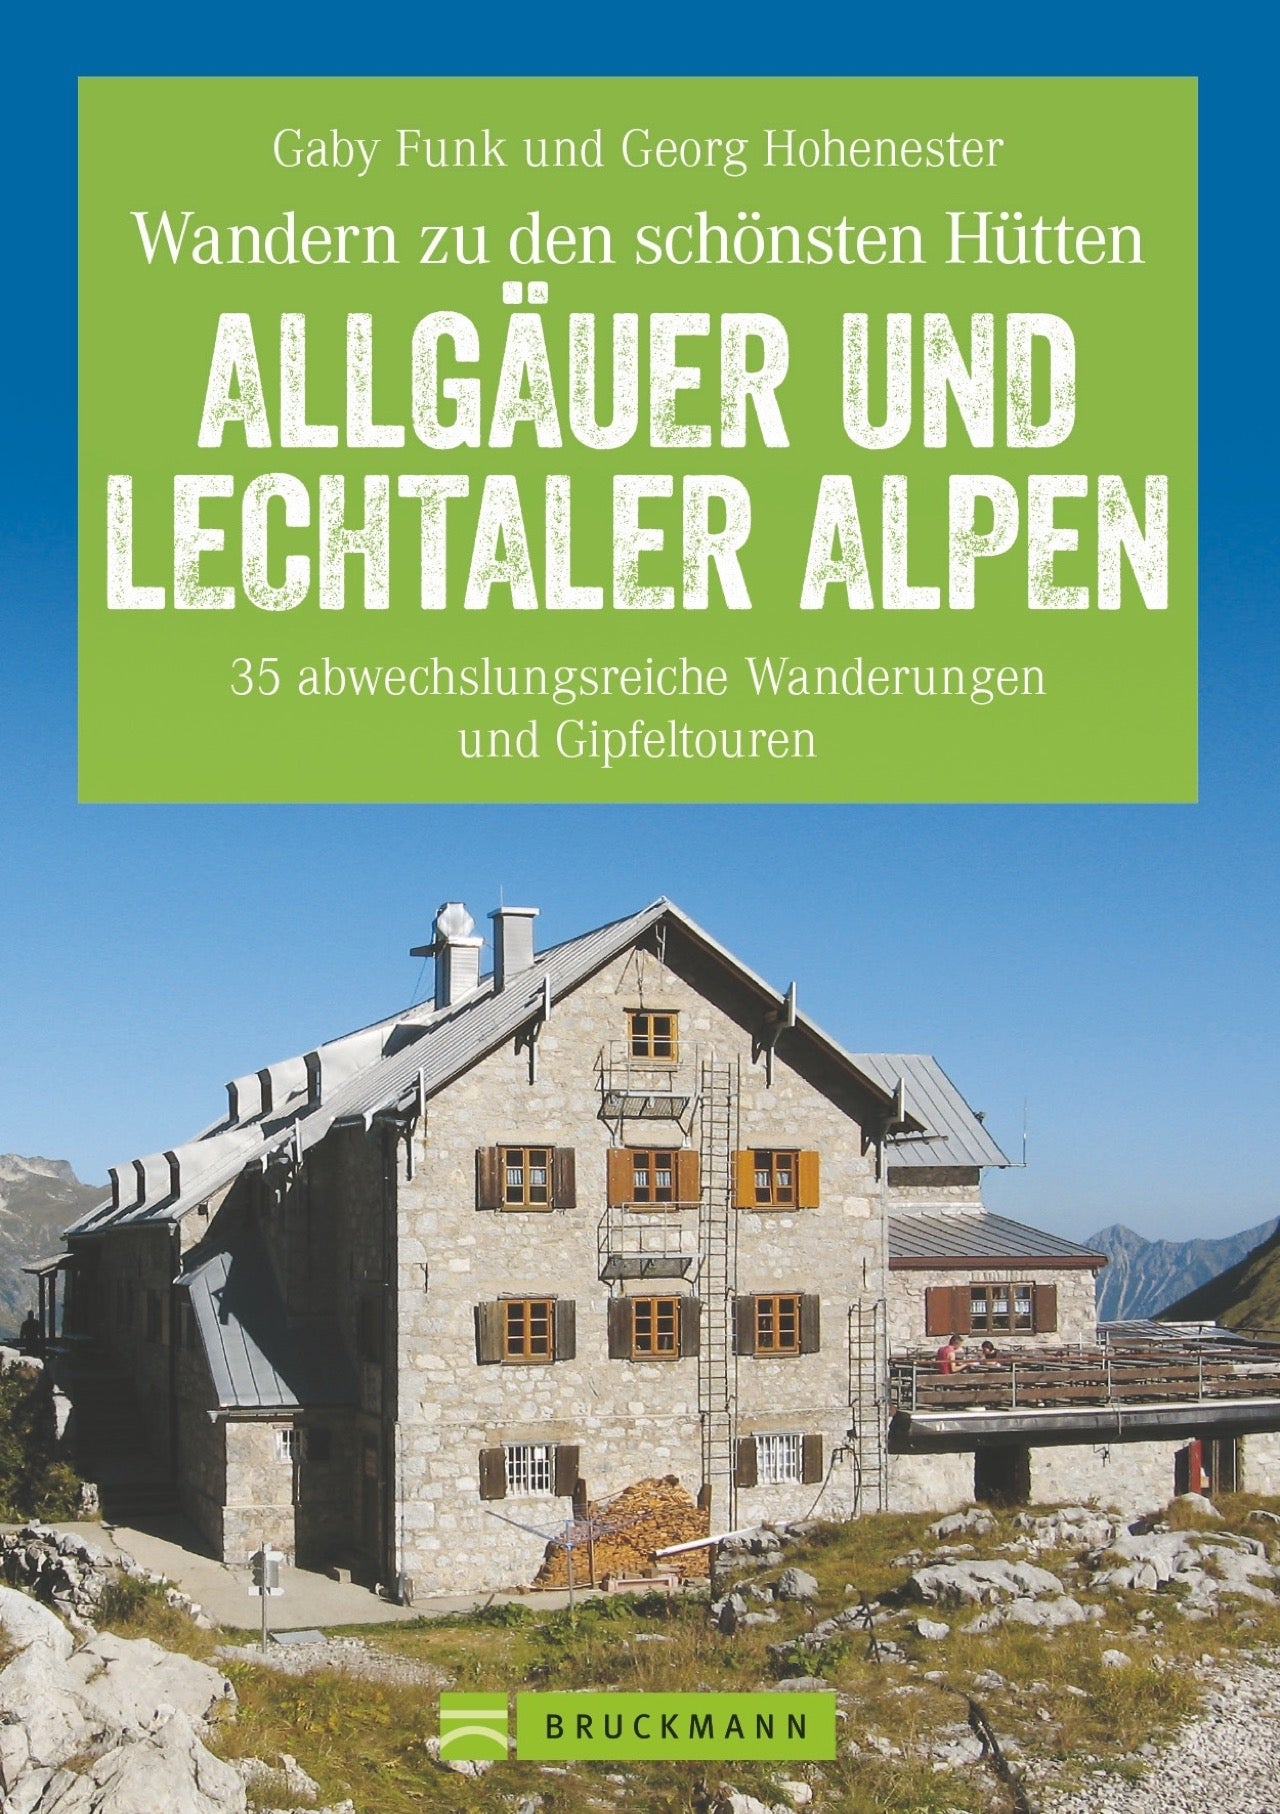 AllgÃ¤uer und Lechtaler Alpen  (2018)